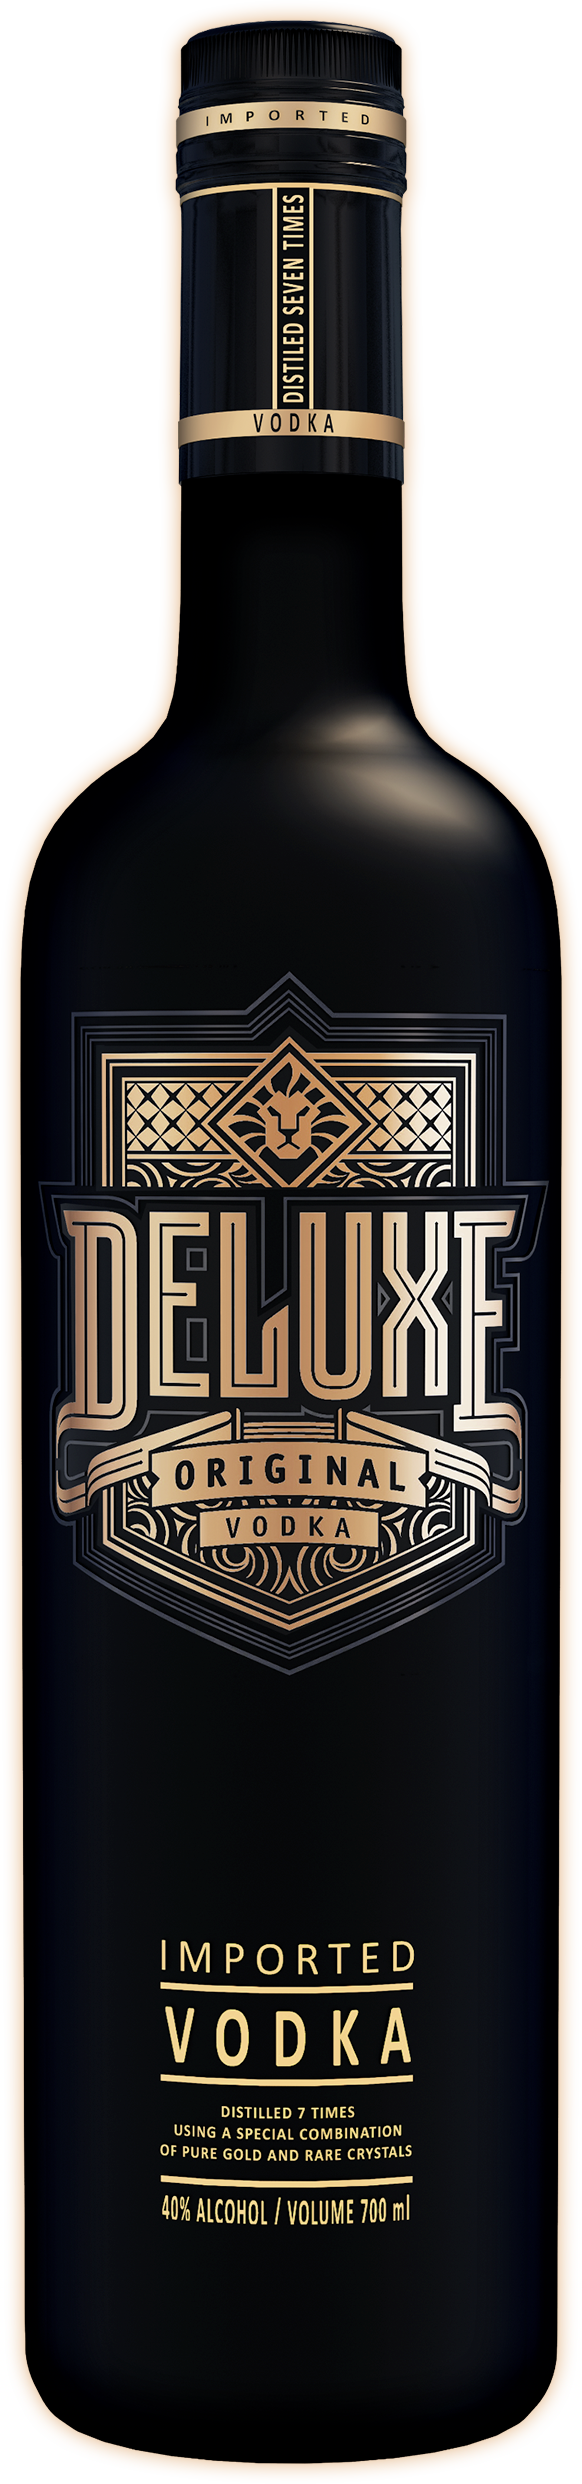 Bouteille de Deluxe Original Vodka